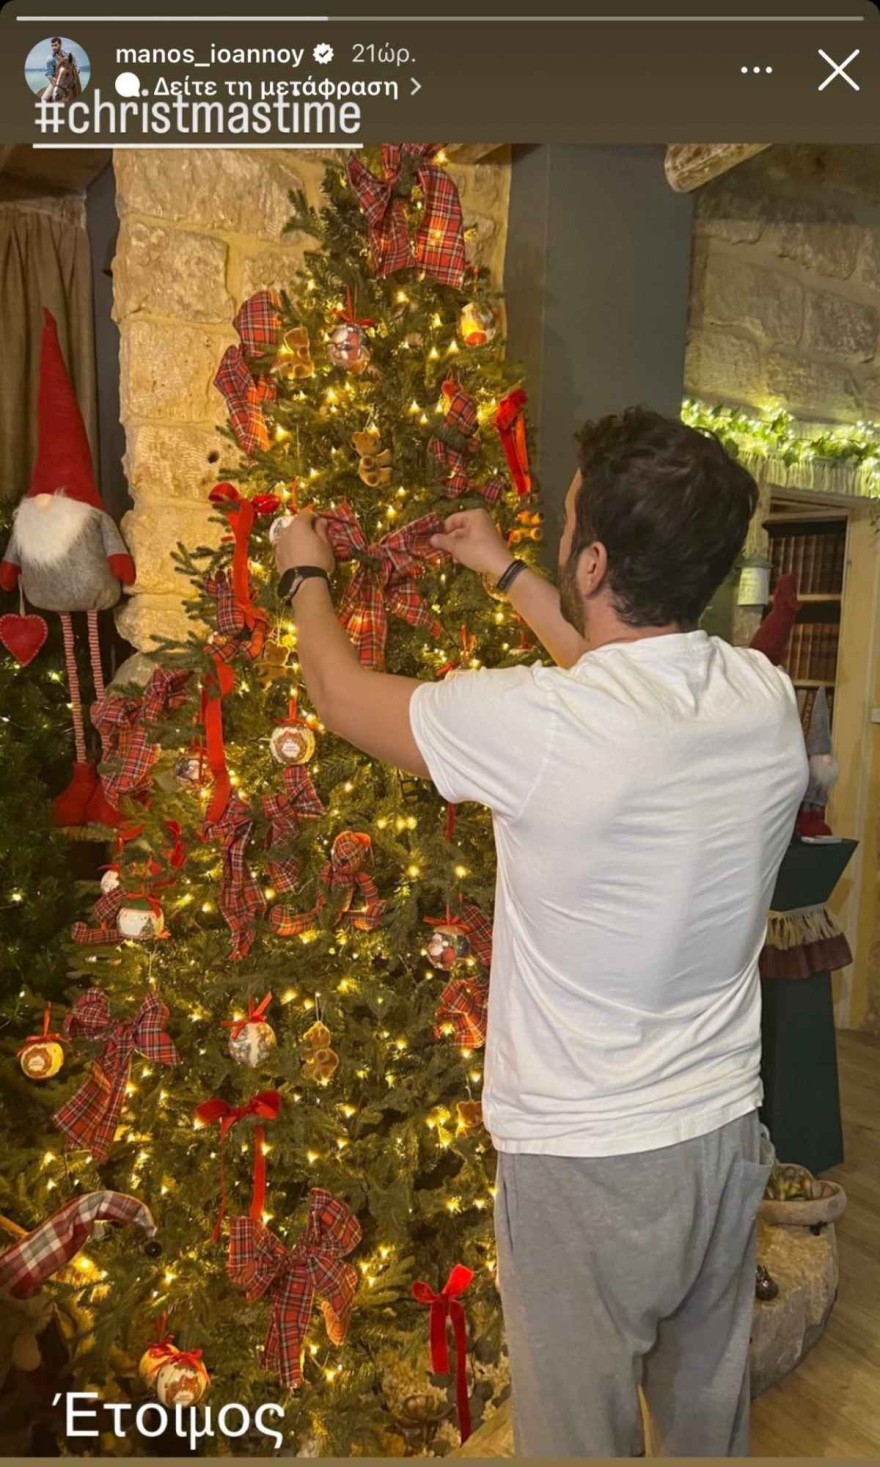 Το χριστουγεννιάτικο δέντρο στο σπίτι του Μάνου Ιωάννου